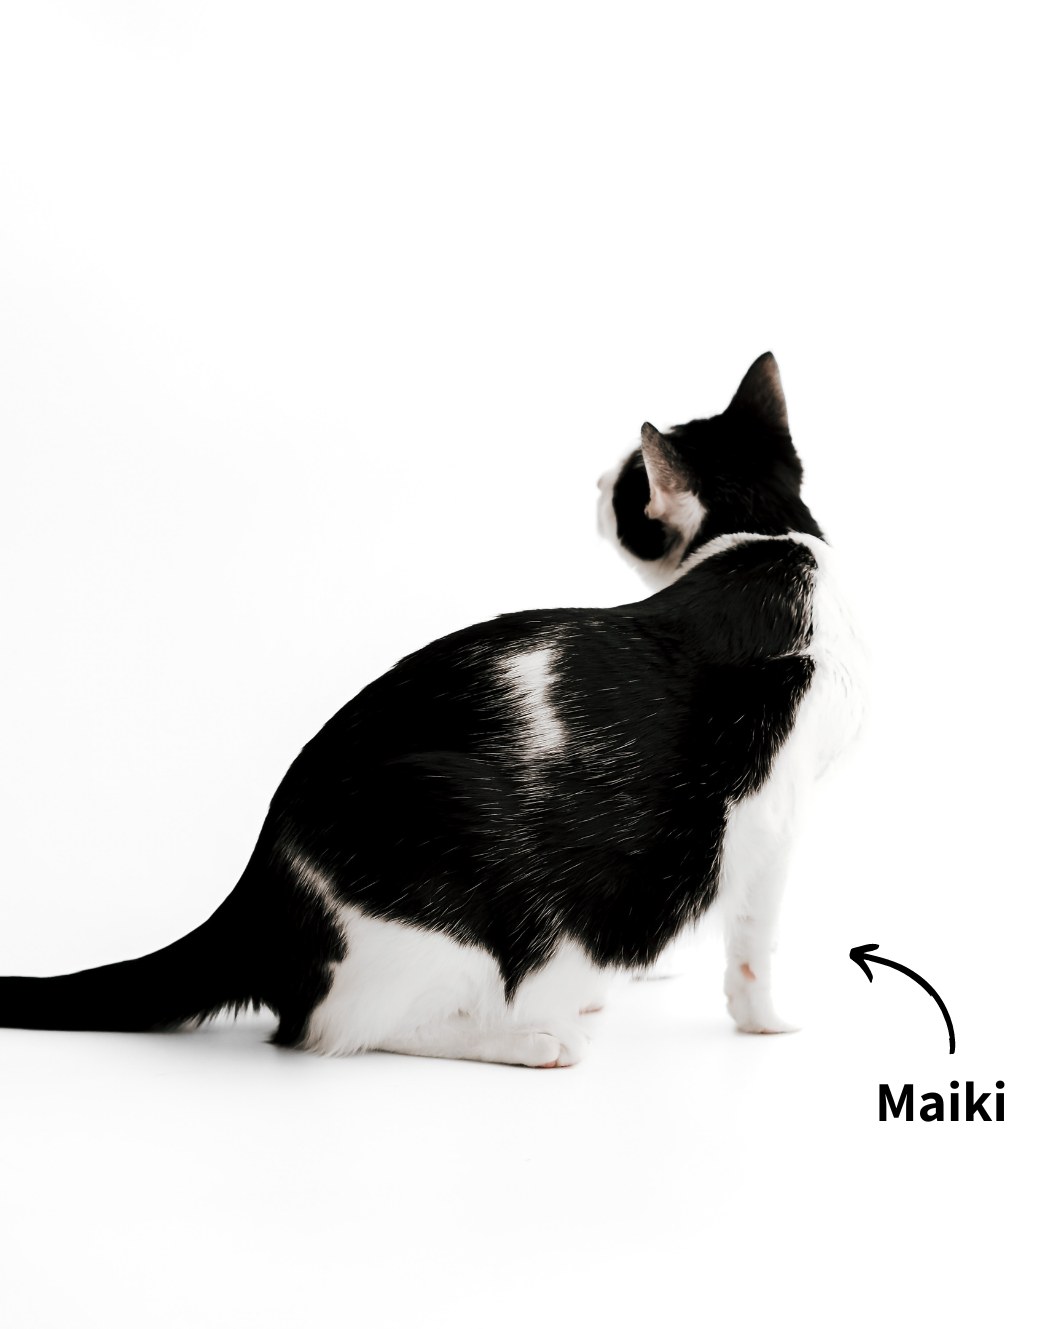 EKH Kater Maiki, der kuschelige Produkttester für unsere Katzenmöbel.